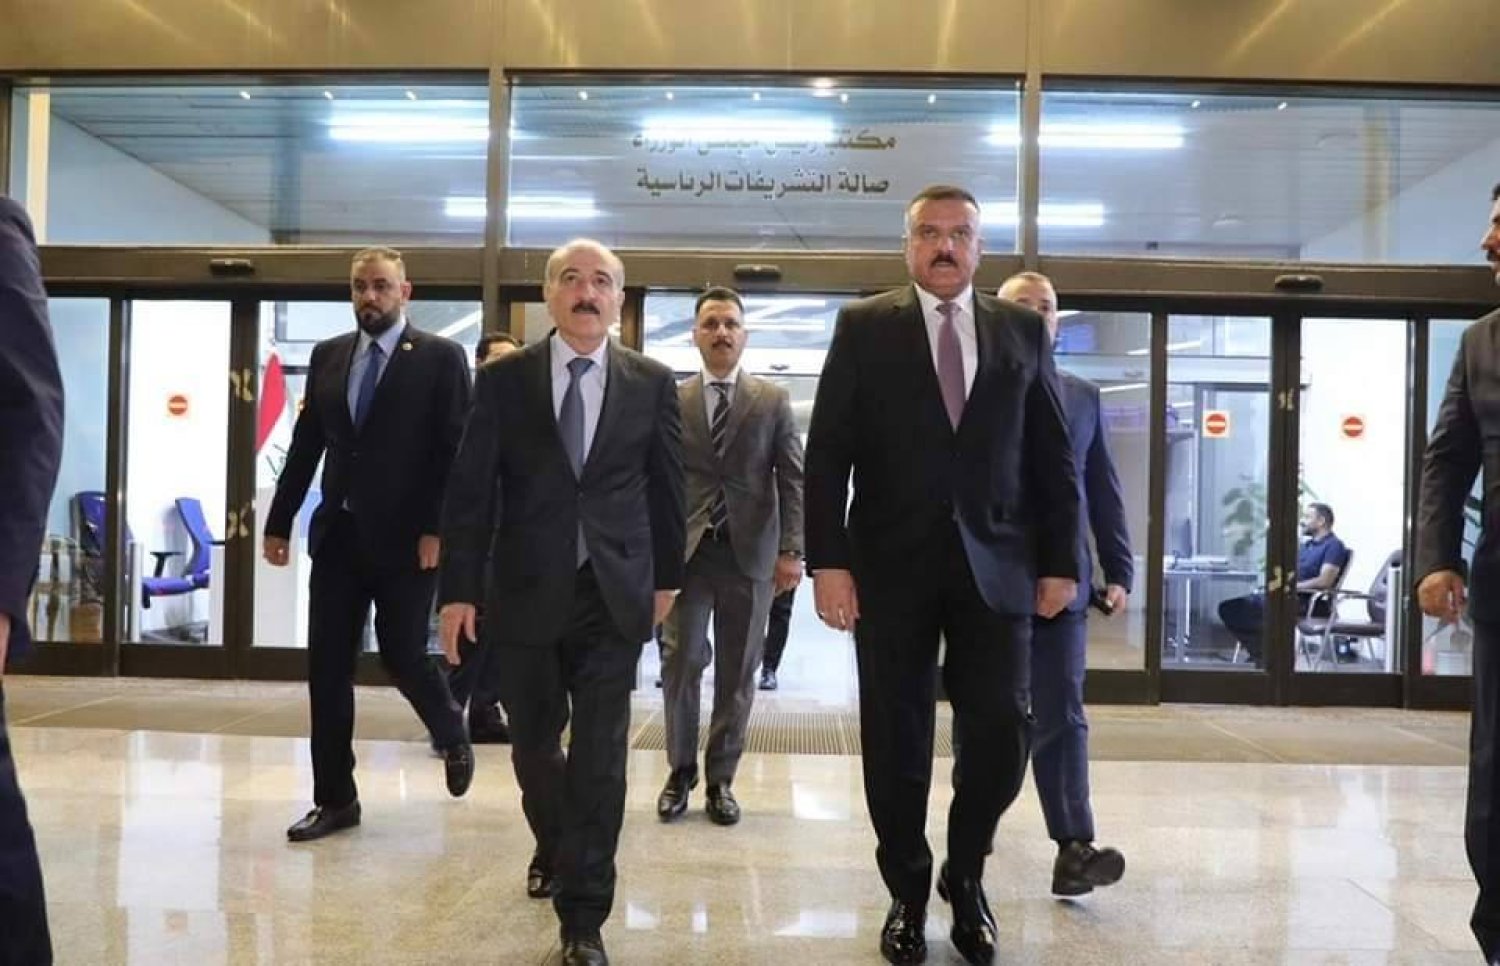 وزير الداخلية العراقي عبد الأمير الشمري يستقبل نظيره السوري محمد خالد الرحمون لدى وصوله إلى بغداد (وزارة الداخلية العراقية)